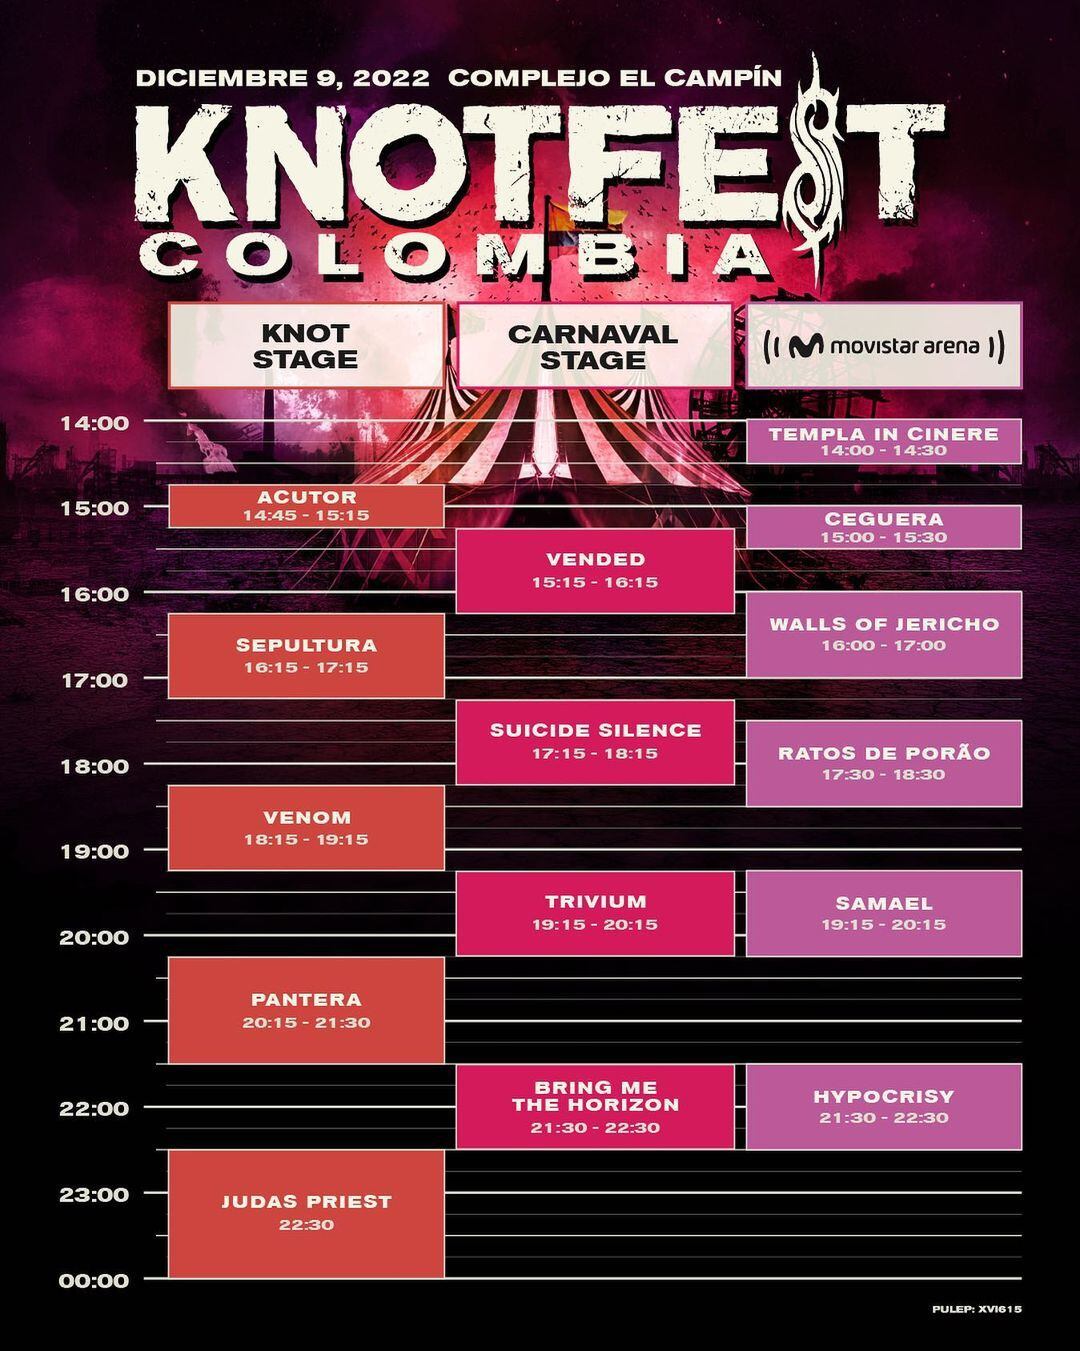 Horarios y distribución de las bandas que formarán parte del Knotfest Colombia. Judas Priest será la banda encargada de cerrar el evento